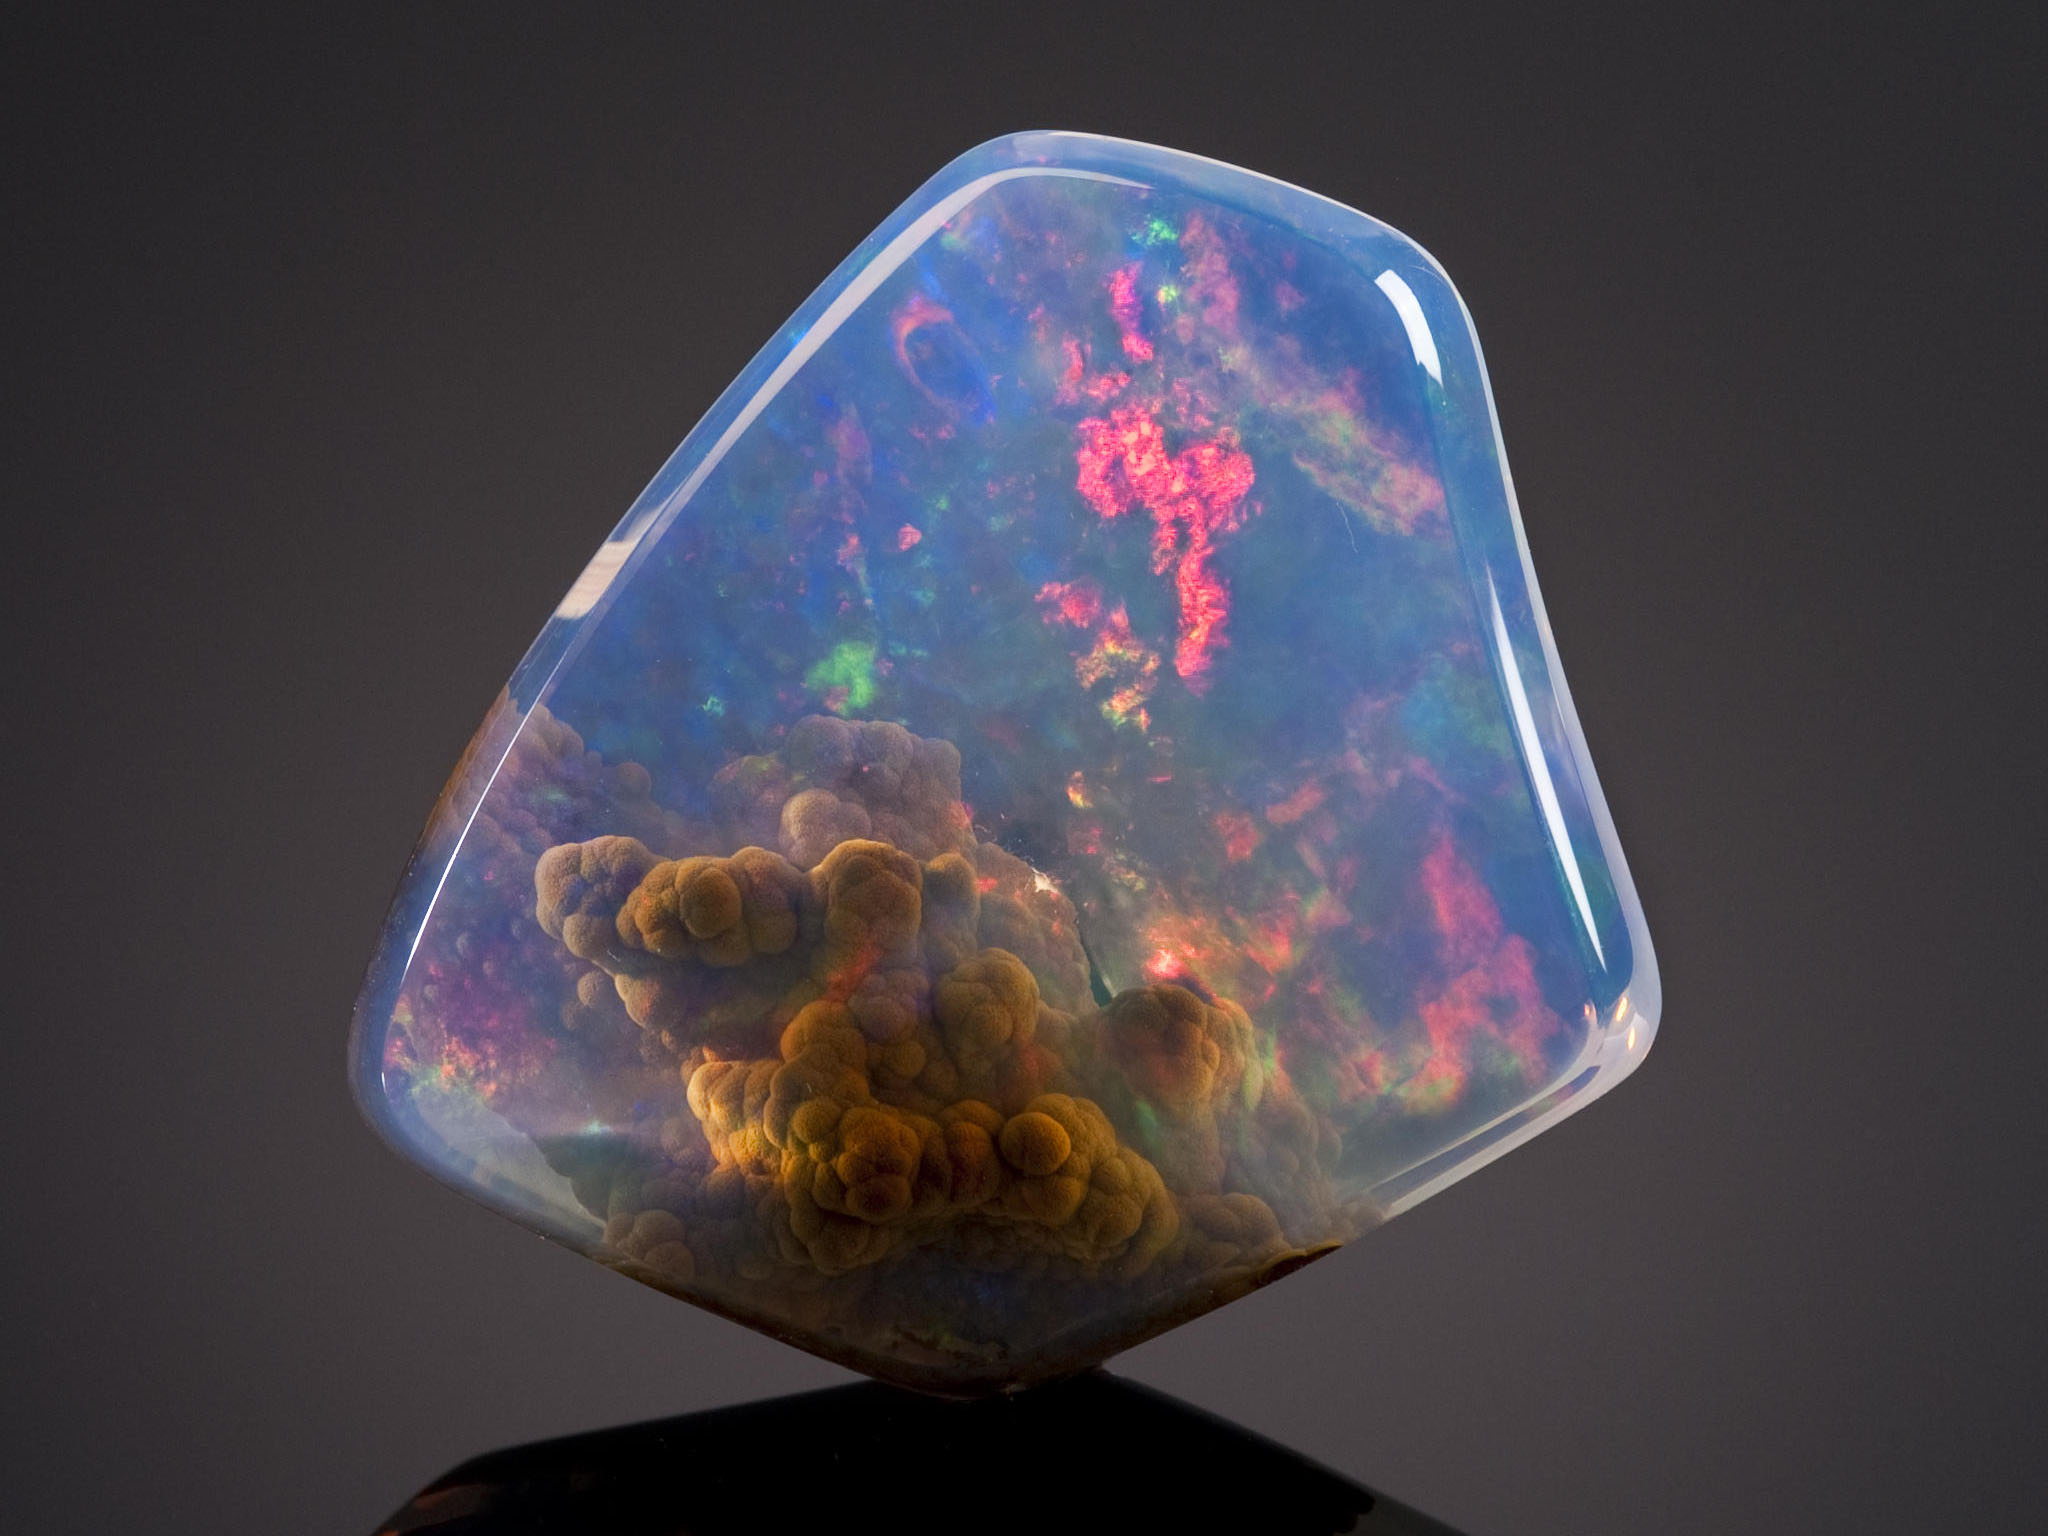 Eigenschaften, Vorteile und Nutzen von Opal